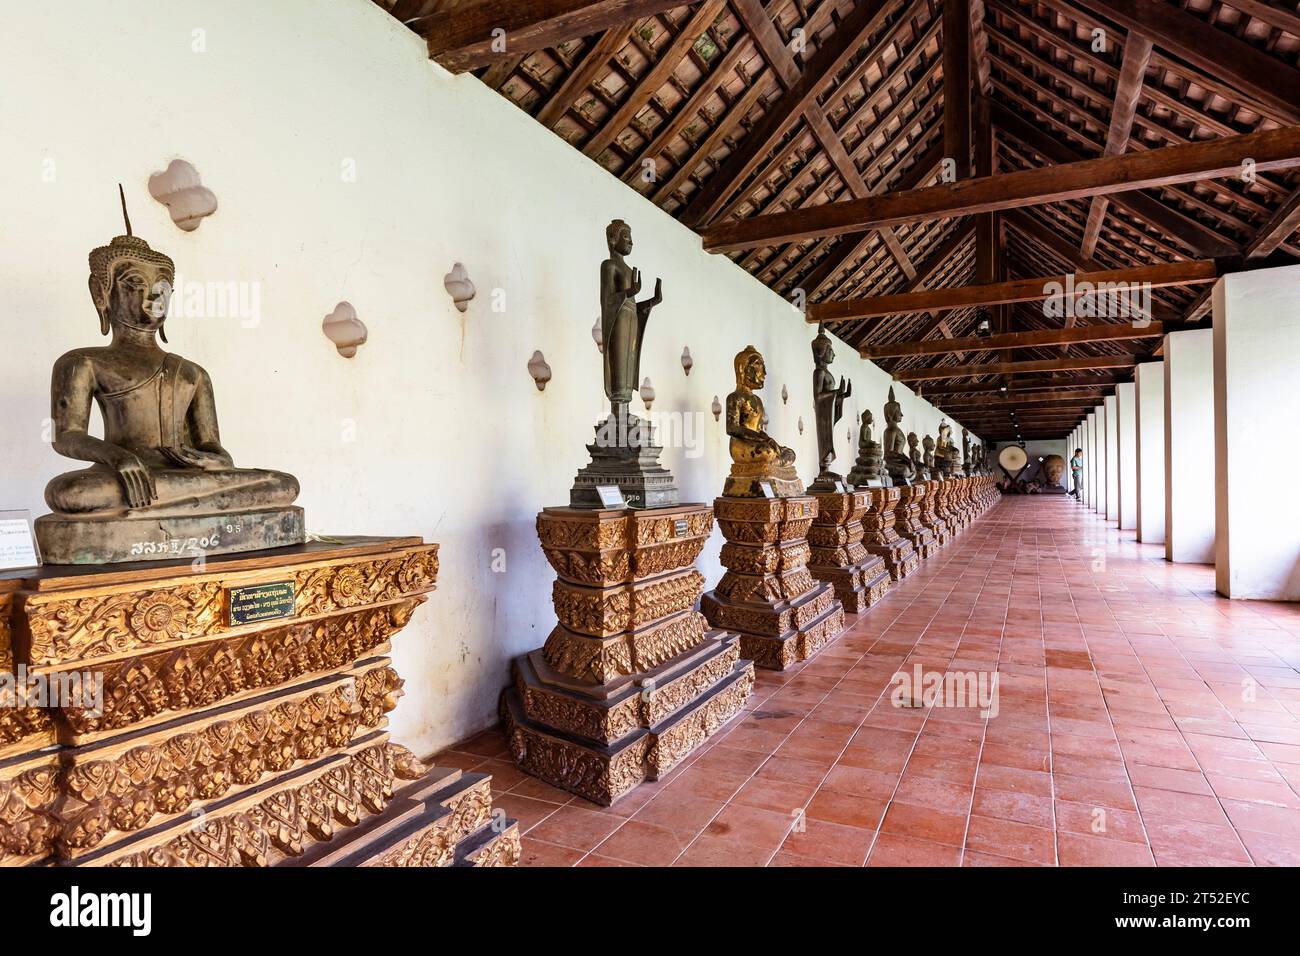 PHA That Luang, That Luang, statues de Bouddha au couloir, stupa bouddhiste et temple, Vientiane, Laos, Asie du Sud-est, Asie Banque D'Images